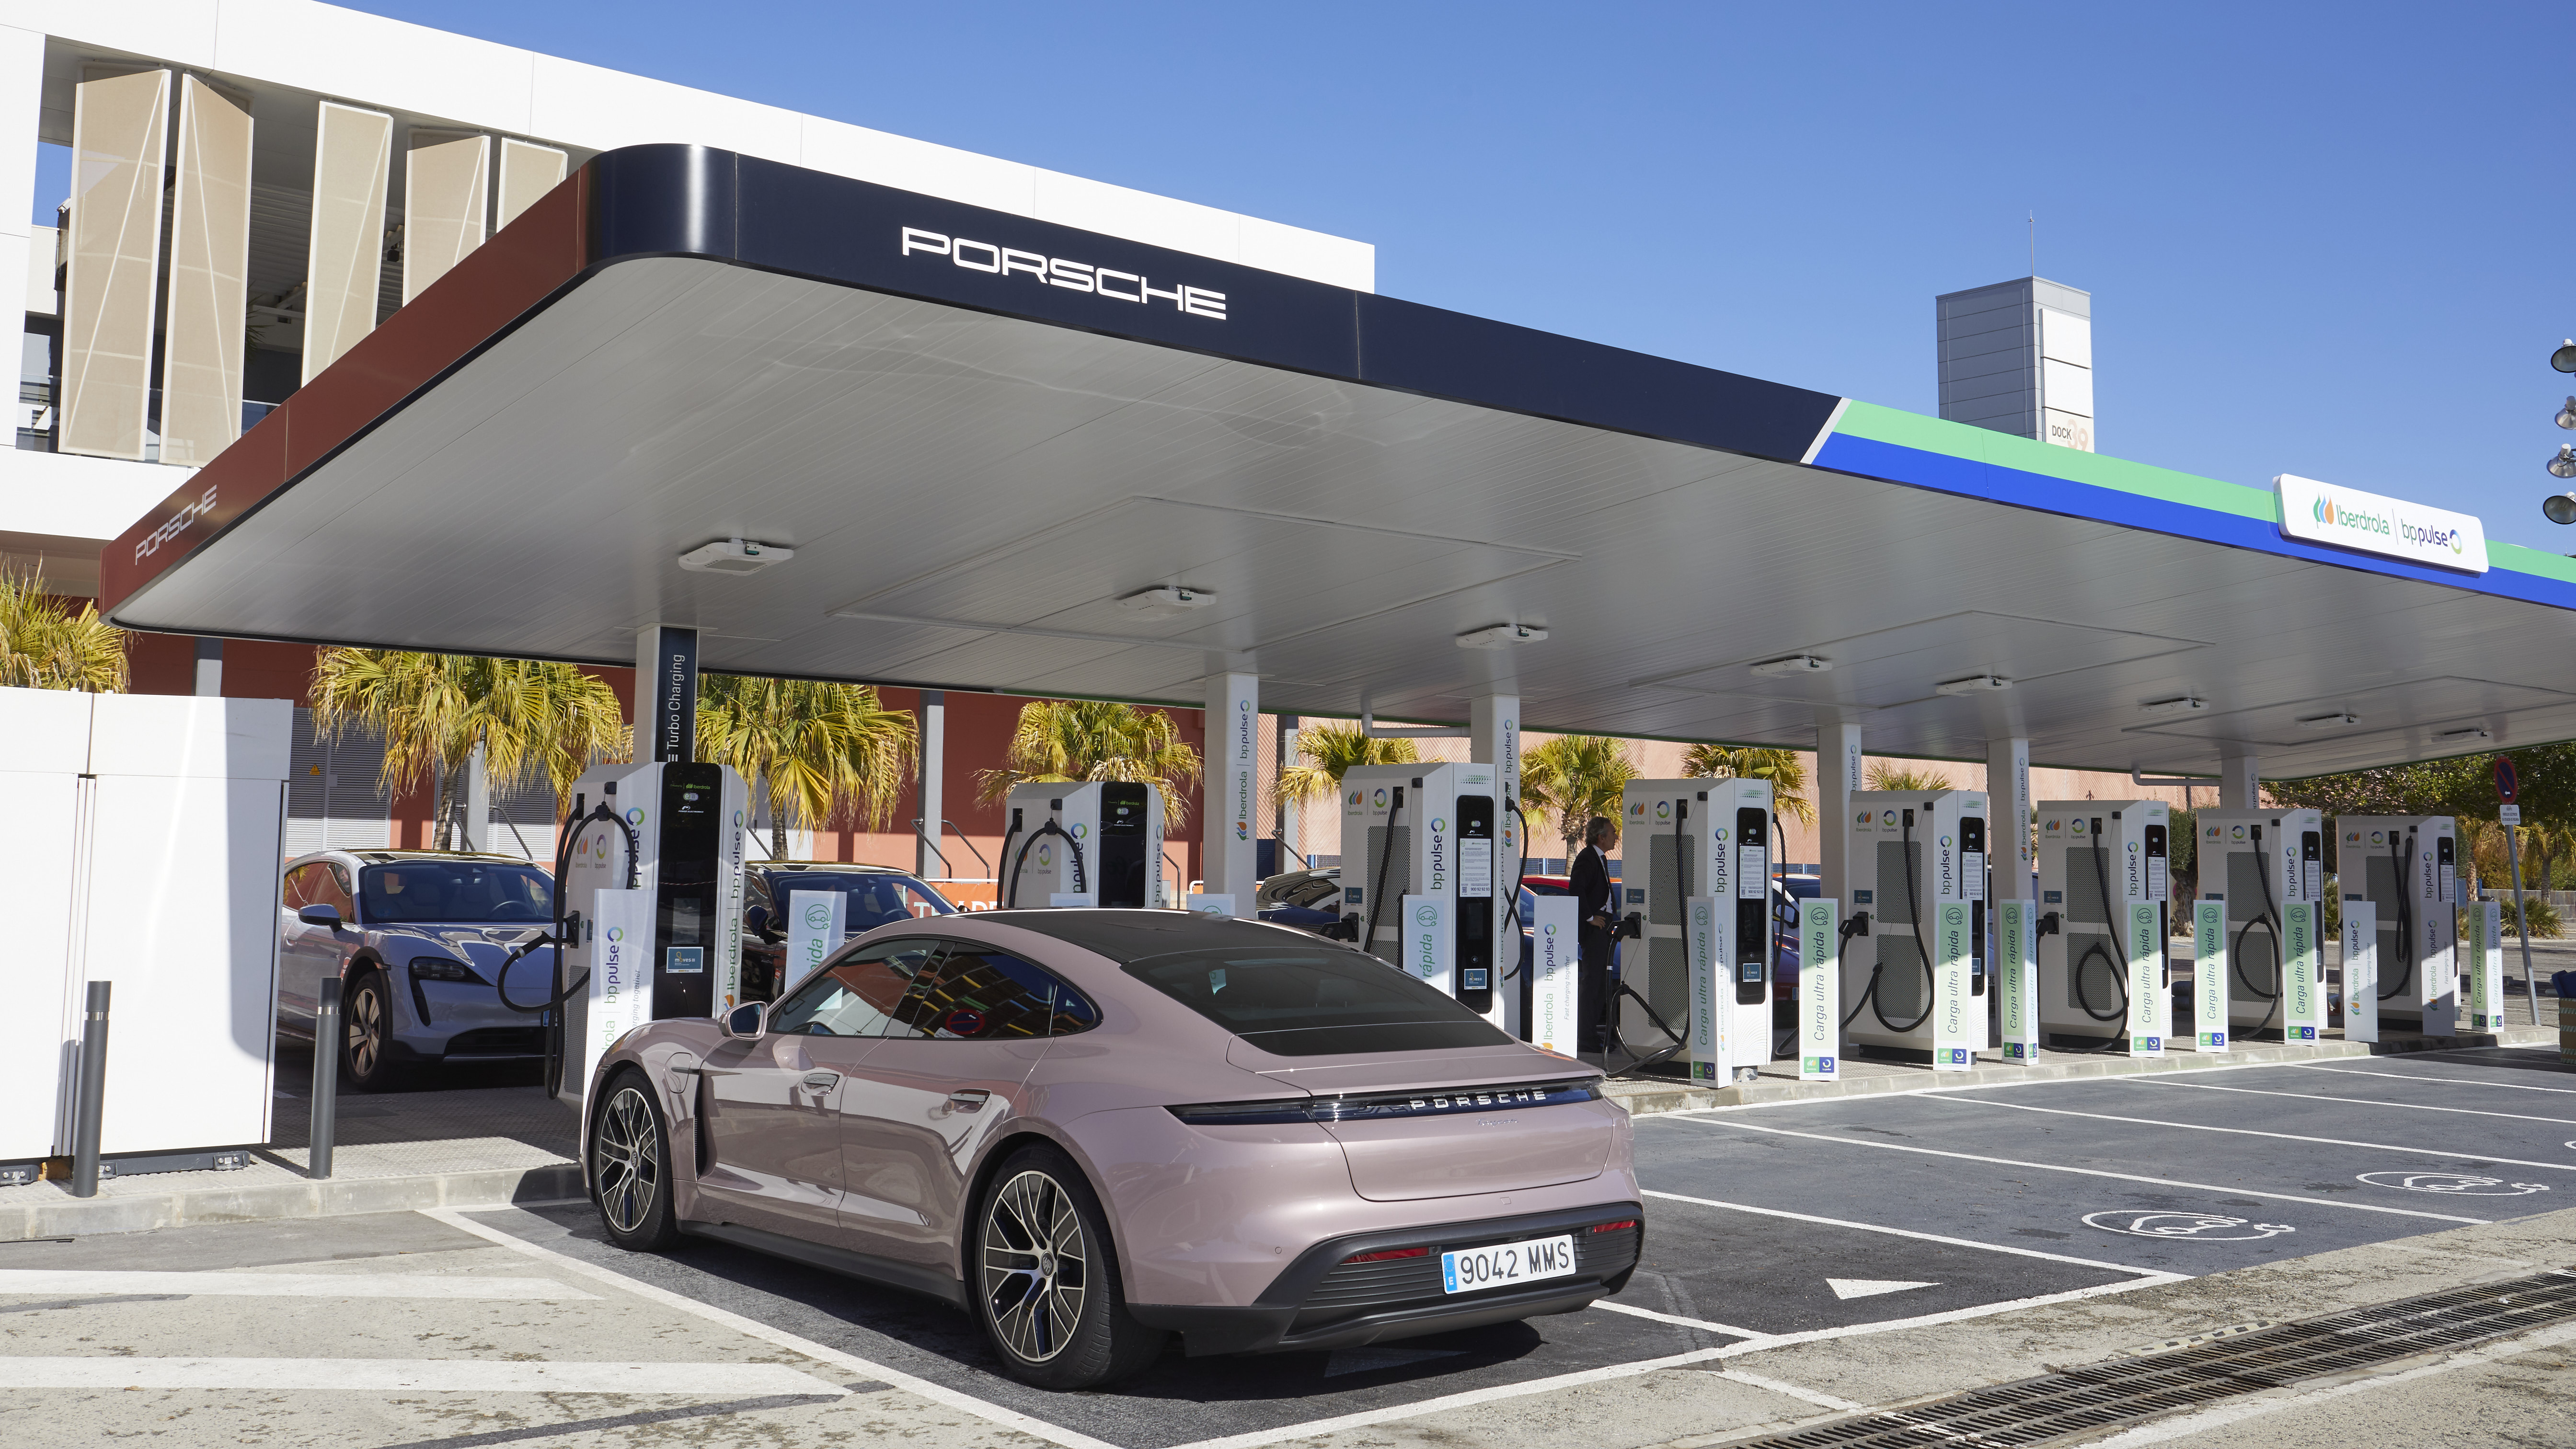 Estación de carga ultrarrápida de Porsche e Iberdrola / bp pulse, Murcia, 2024, Porsche Ibérica